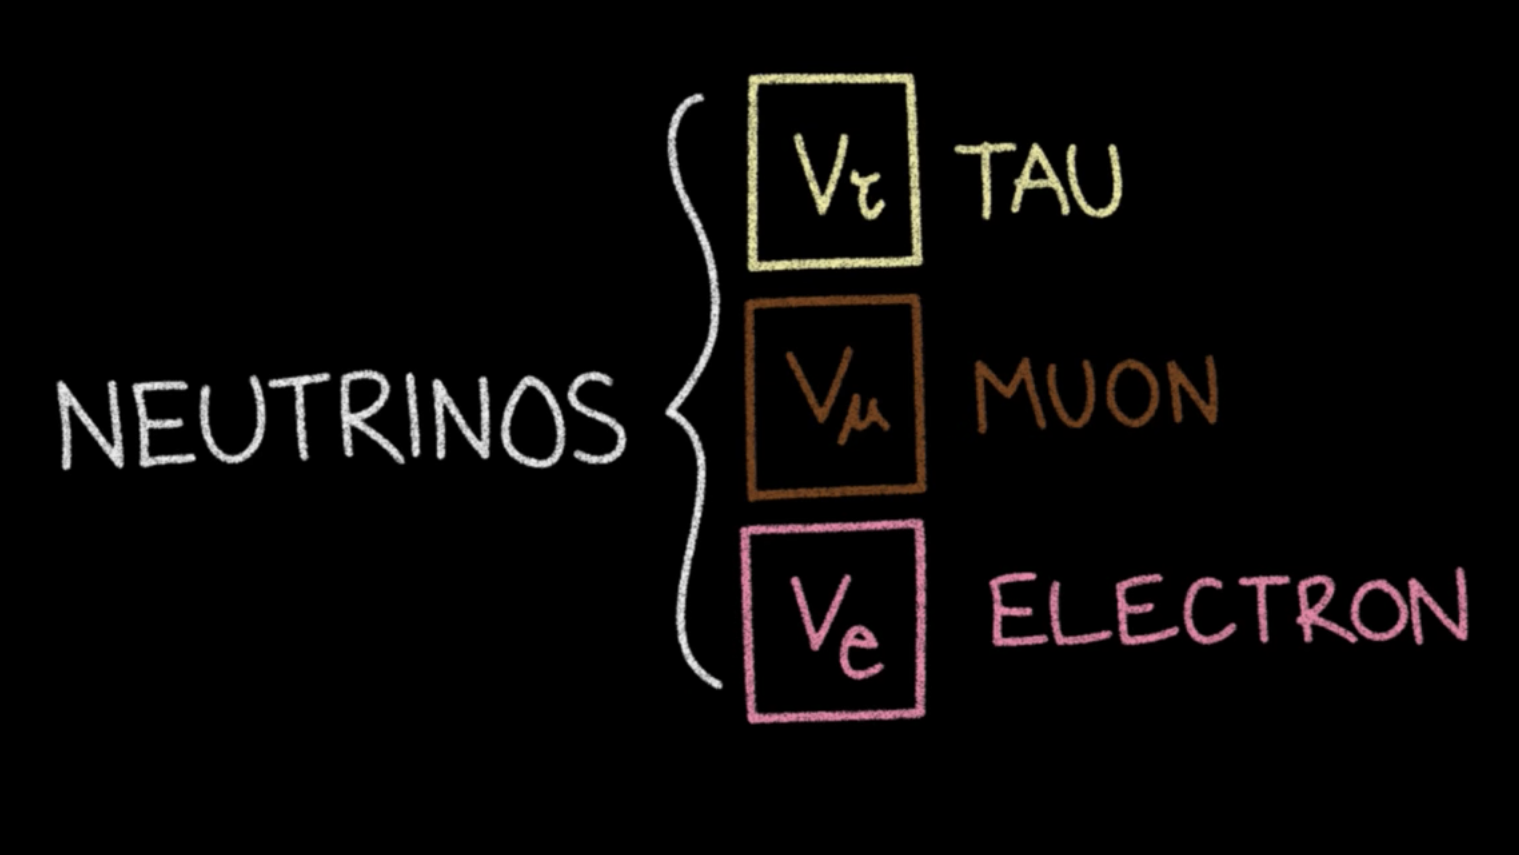 Neutrinos: tau, muon, electron